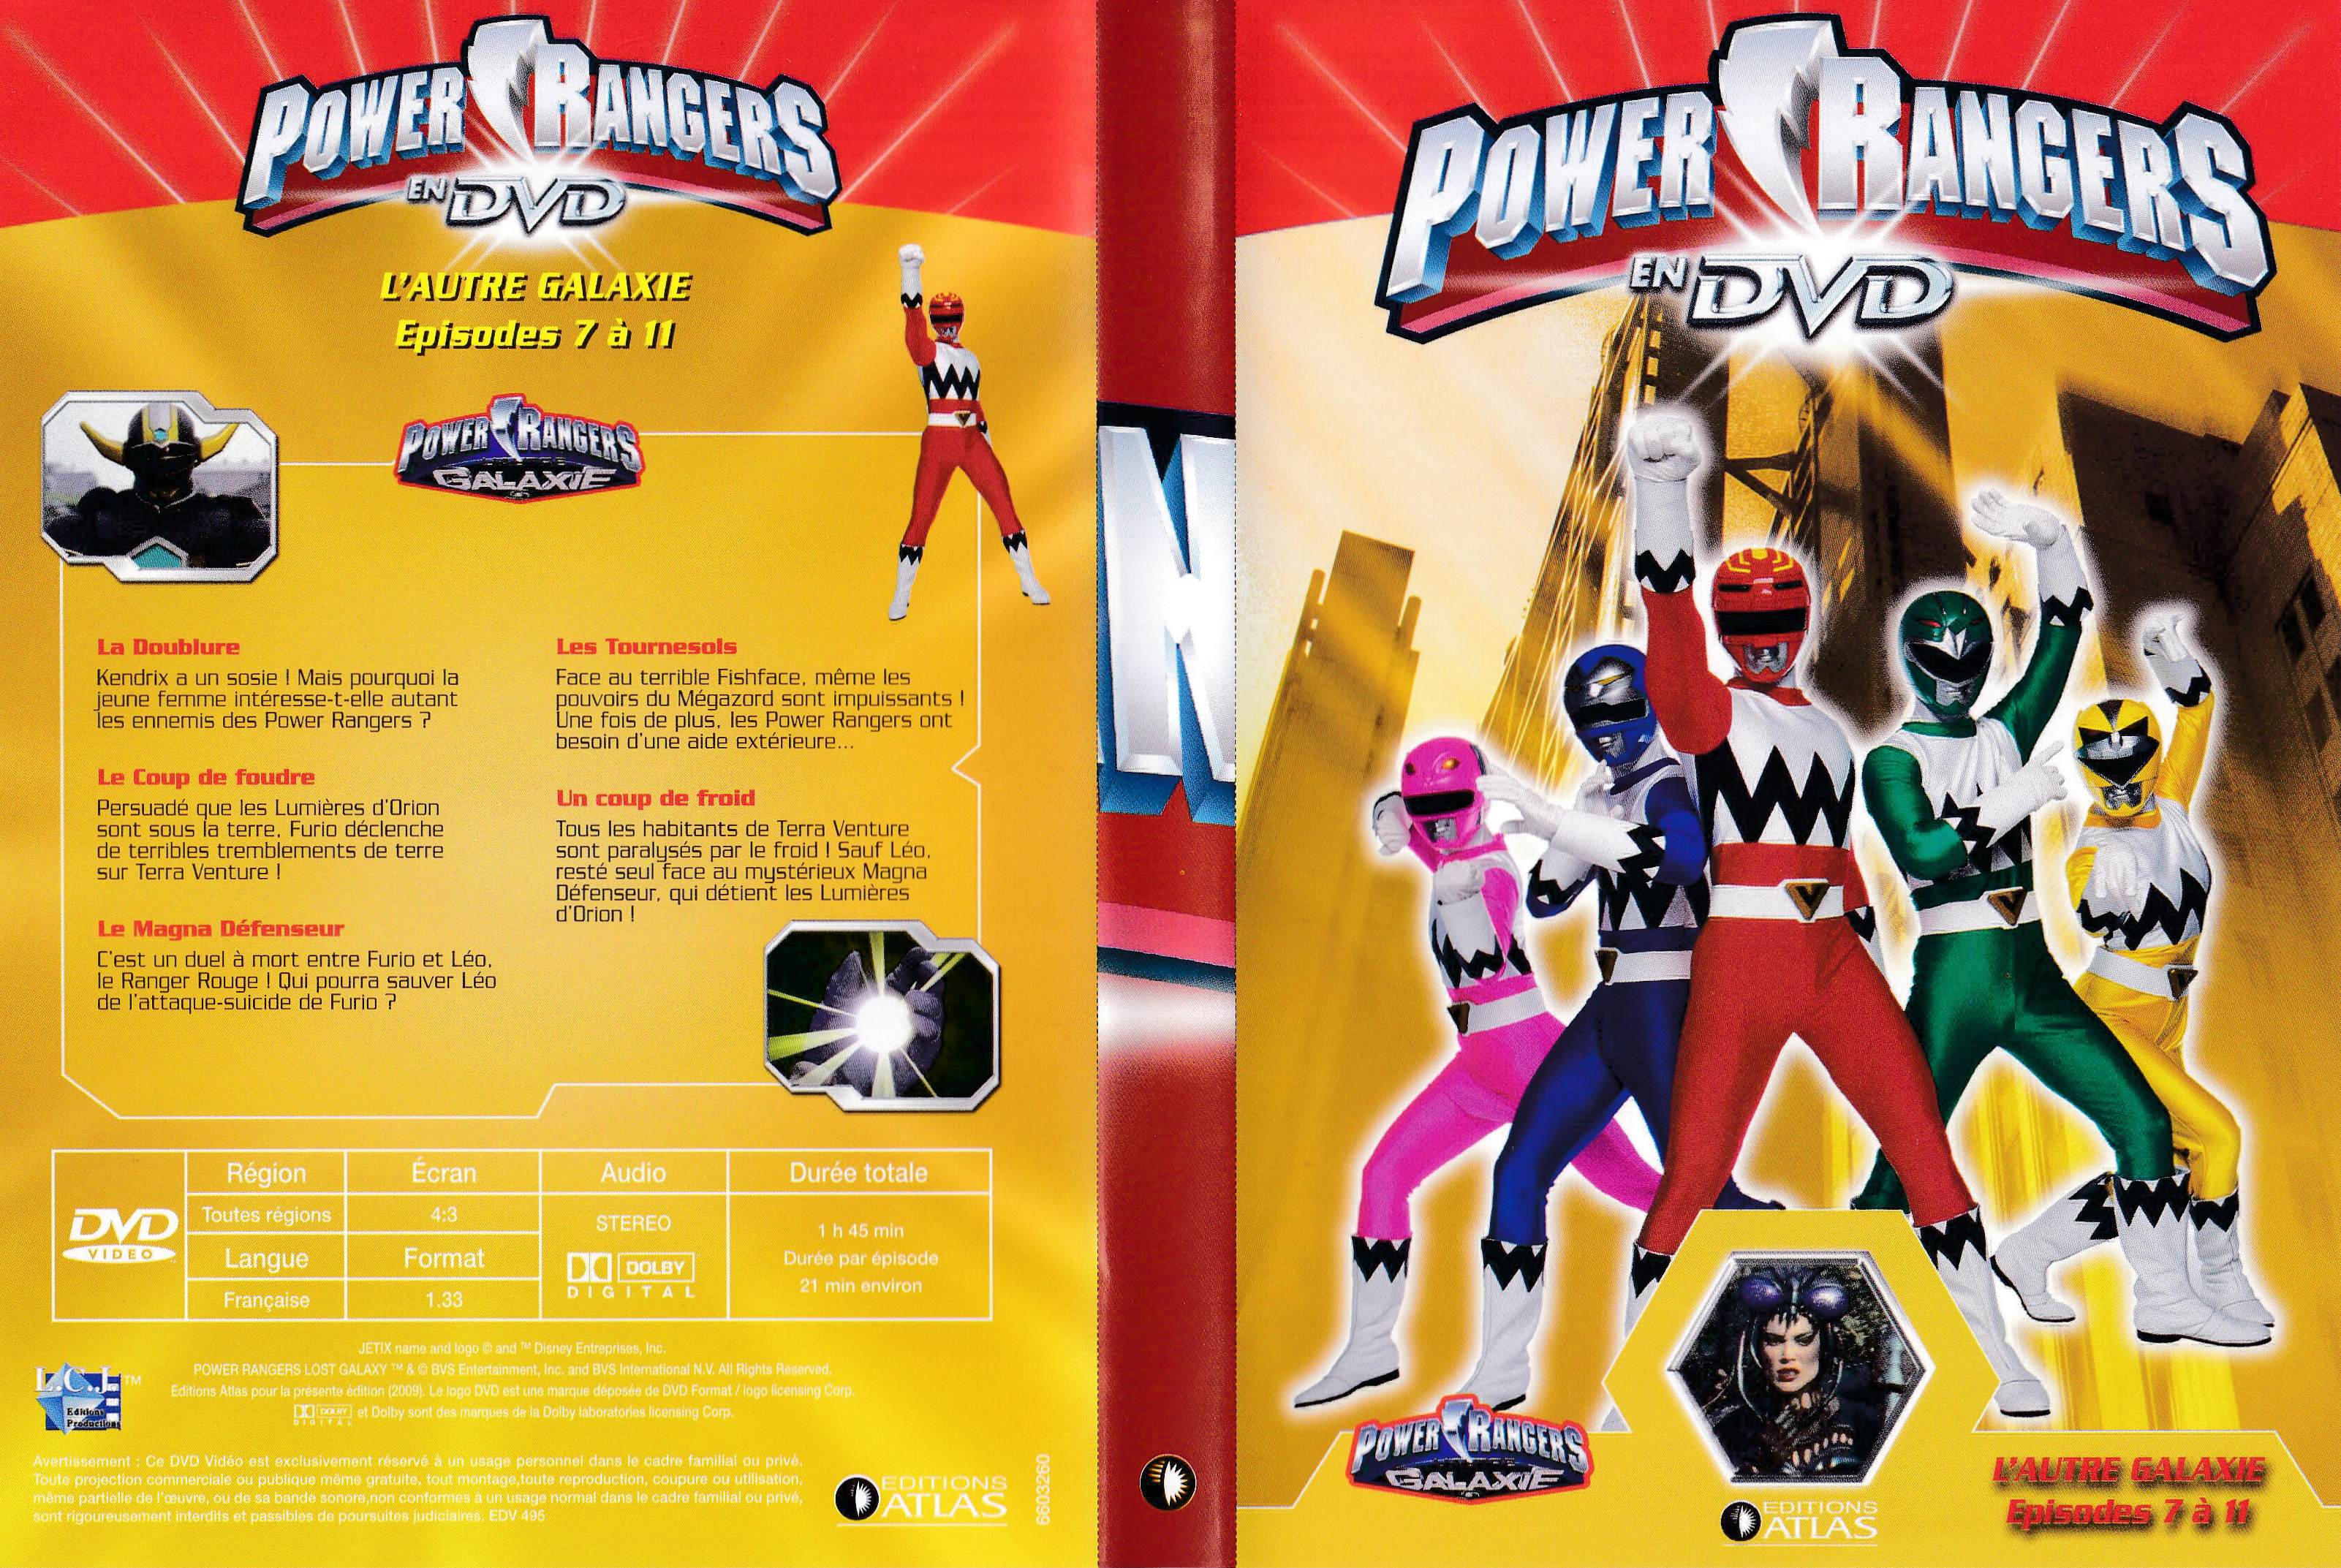 Power Rangers en DVD n°60